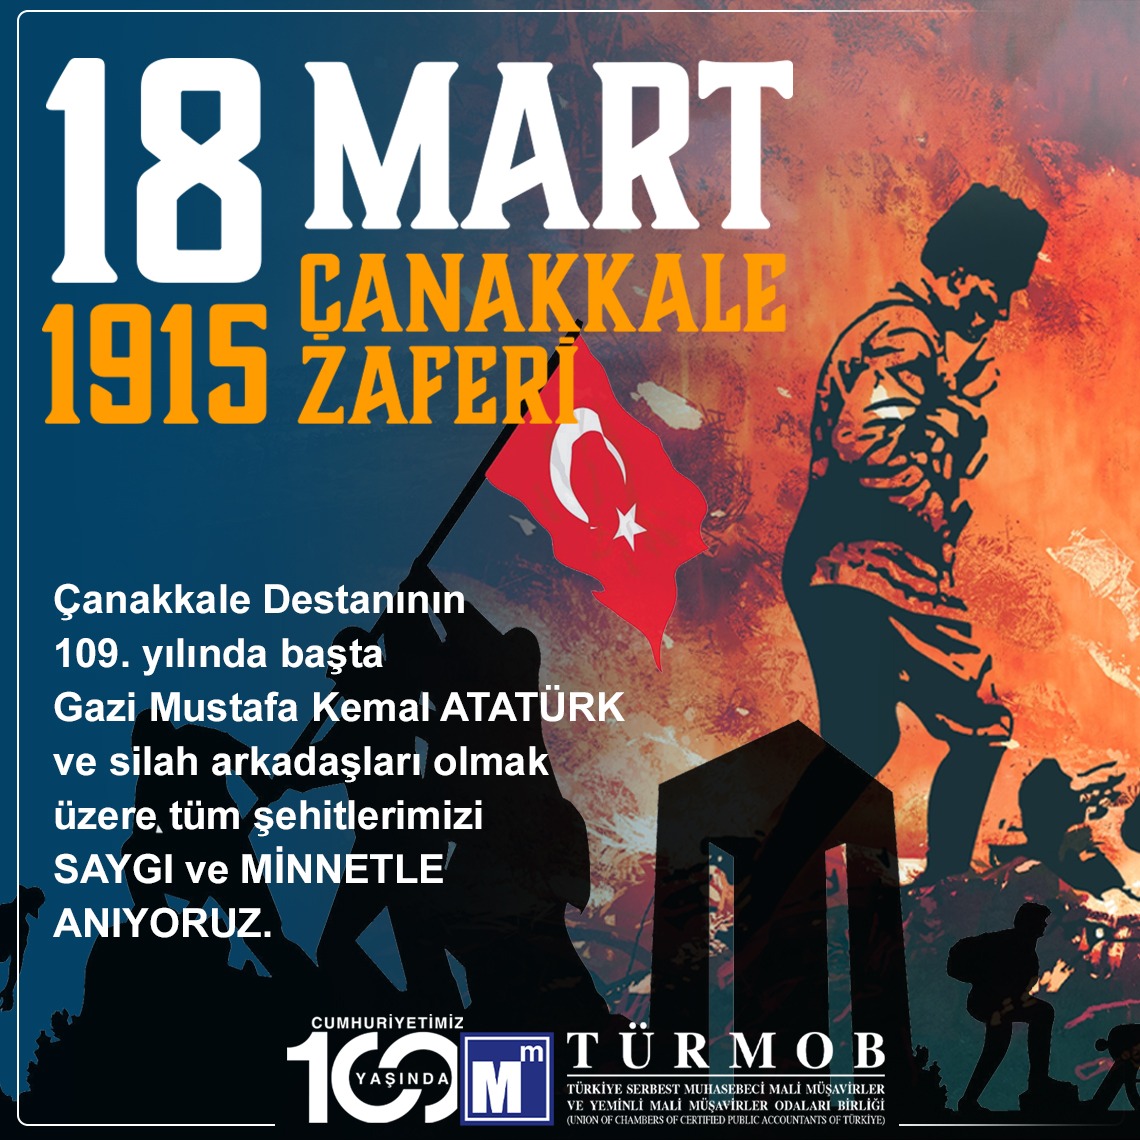 Çanakkale Destanının 109. yılında; başta Gazi Mustafa Kemal ATATÜRK olmak üzere tüm şehitlerimizi saygı ve minnetle anıyoruz… ow.ly/blSo50QV64e

#türmob
#18MartÇanakkaleZaferi